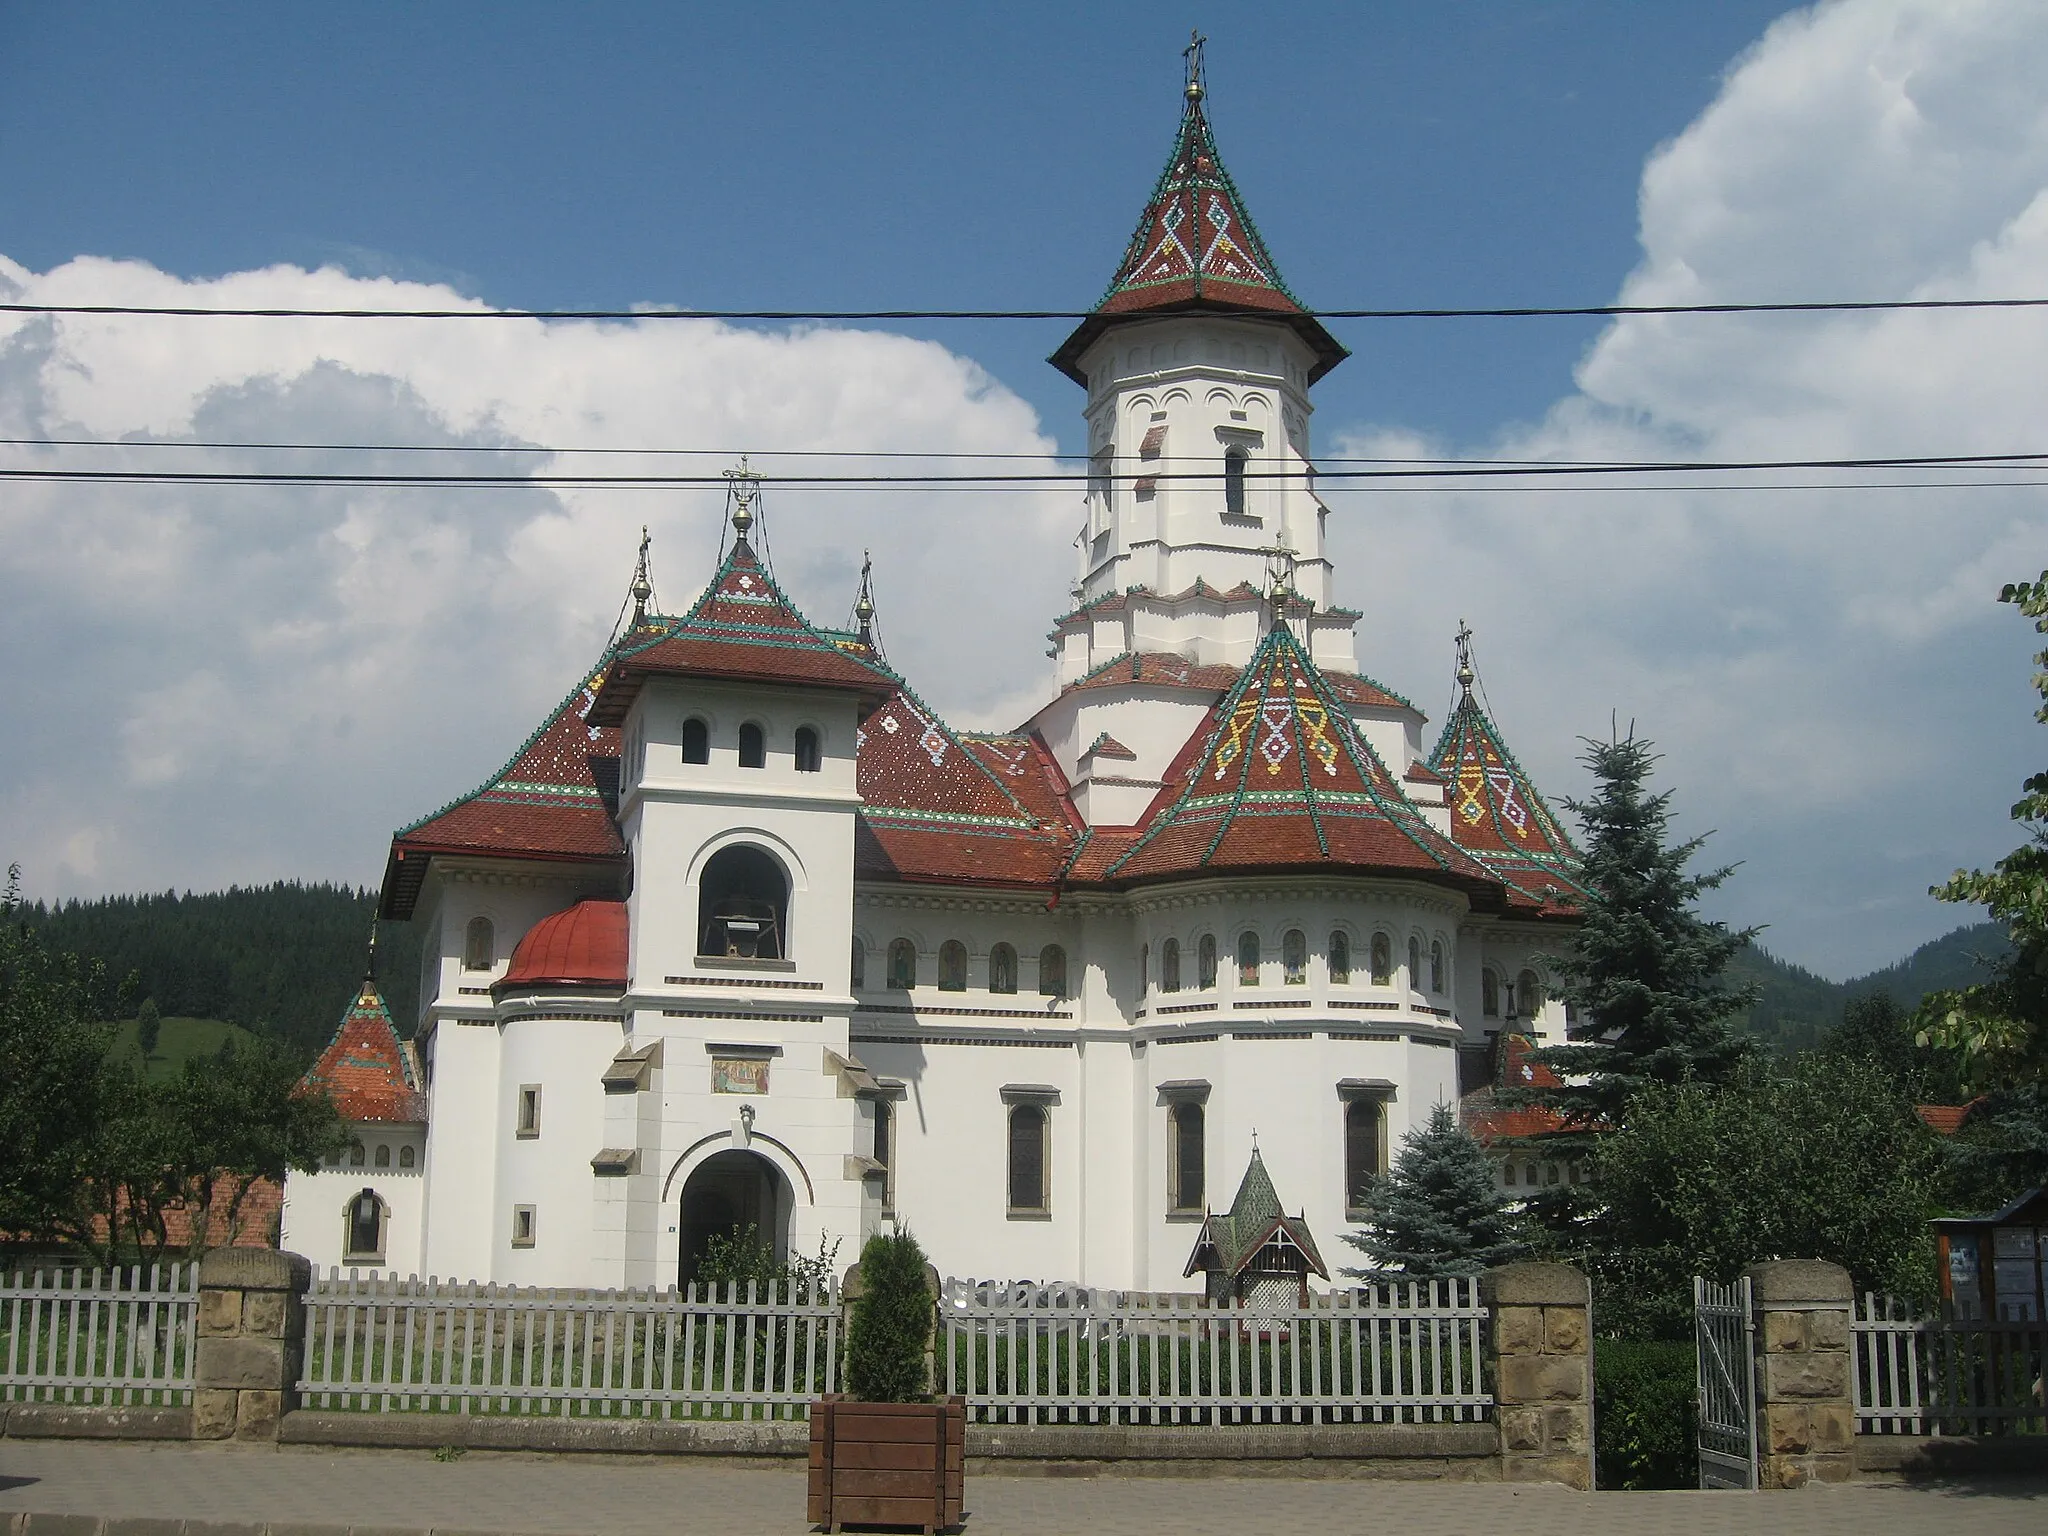 Photo showing: The Assumption Church in Câmpulung Moldovenesc, Romania